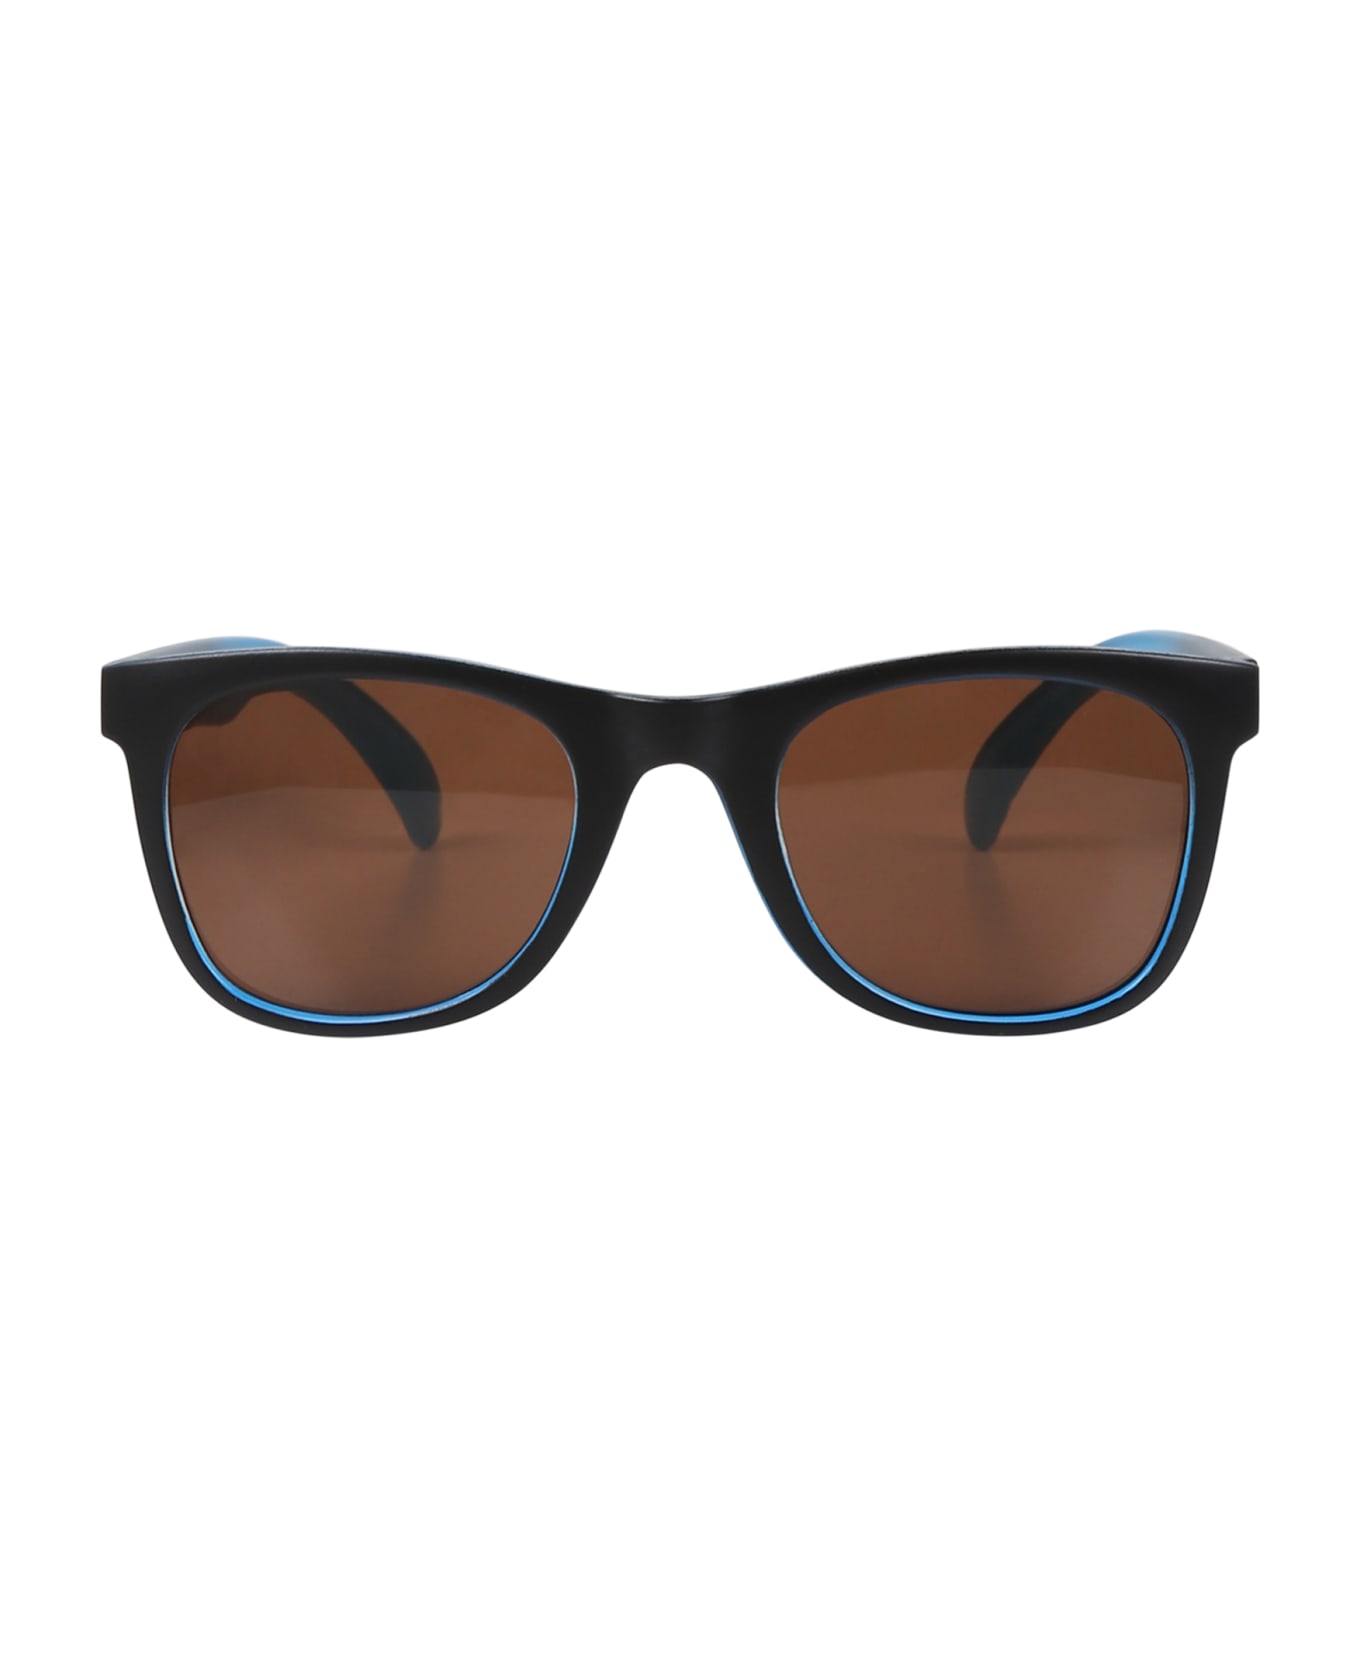 Molo Black Smile Sunglasses For Boy - Black